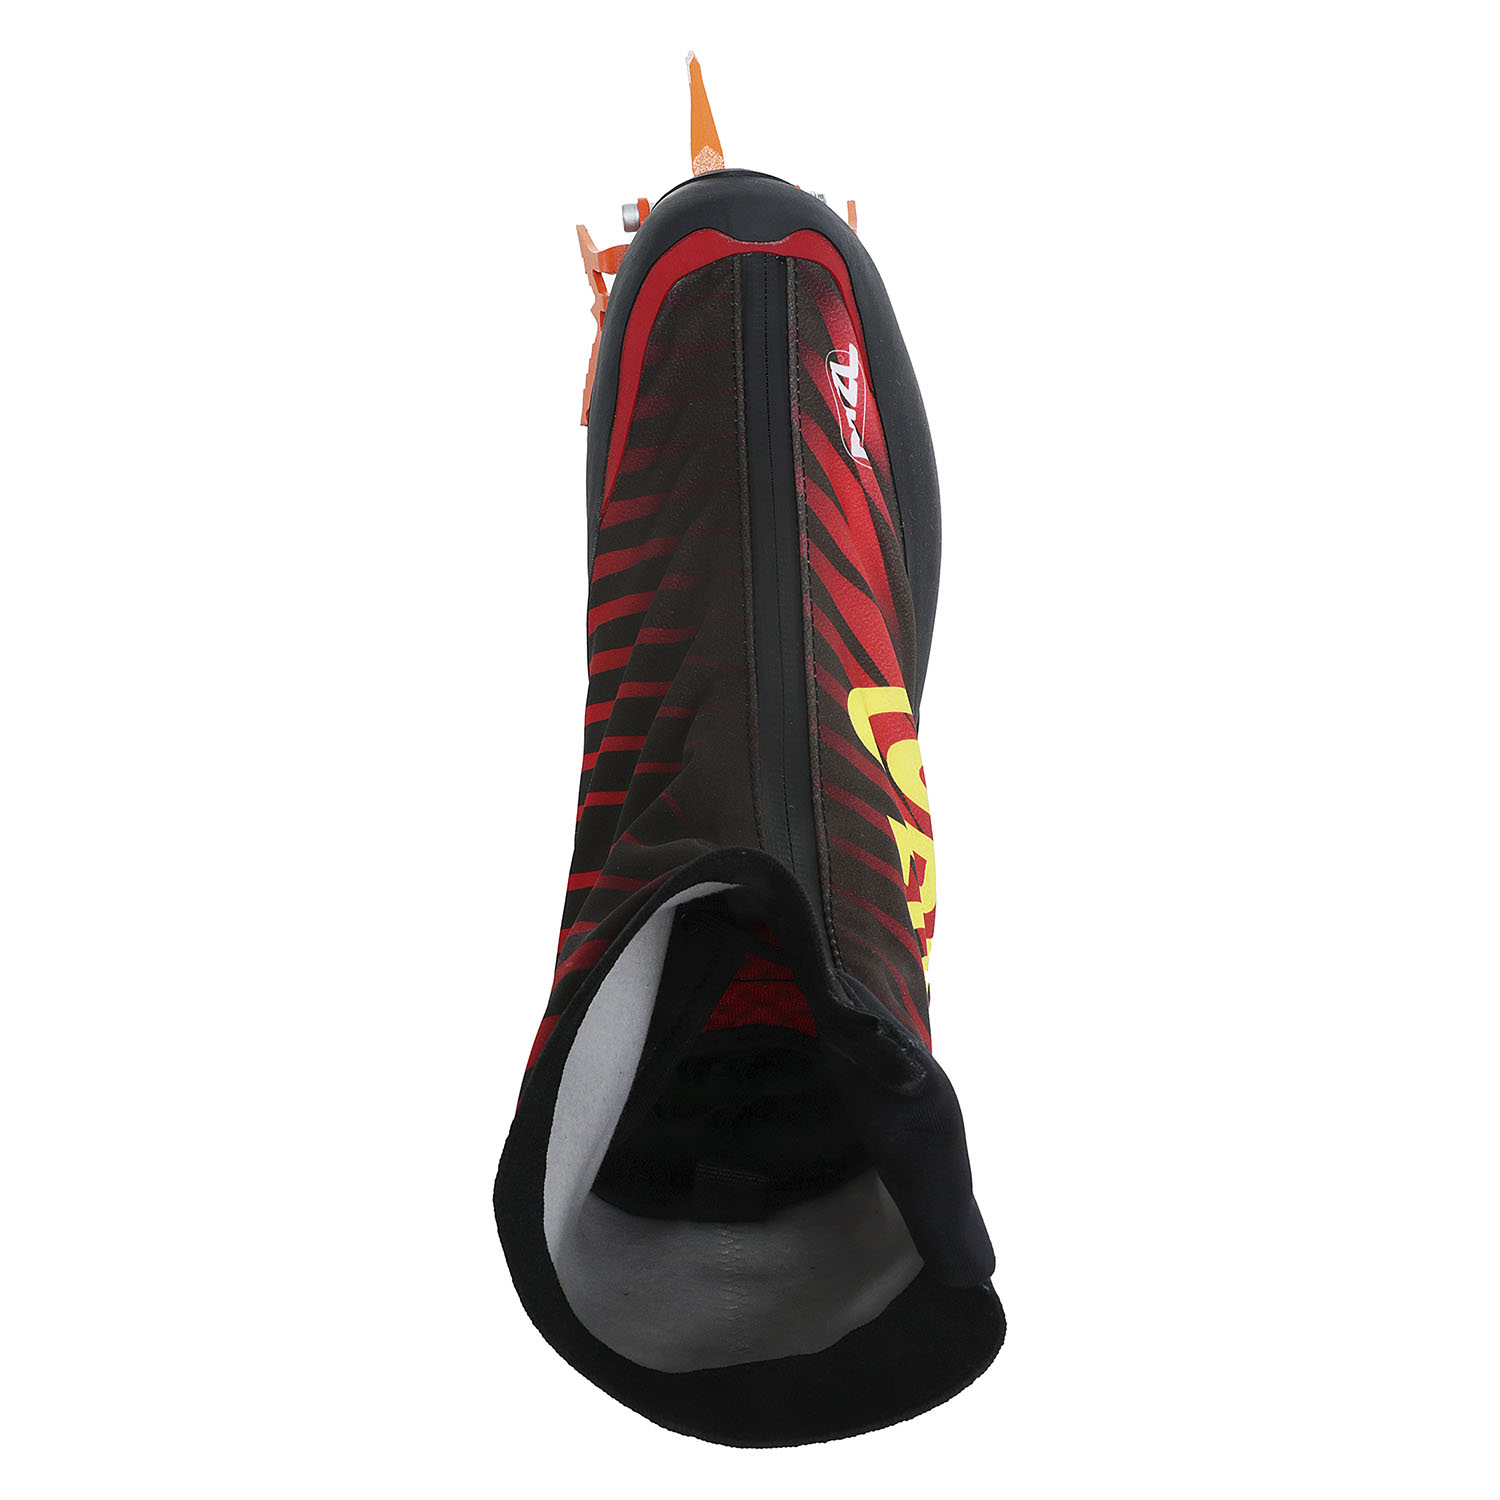 Ботинки Asolo Comp XT Evo Black/Red